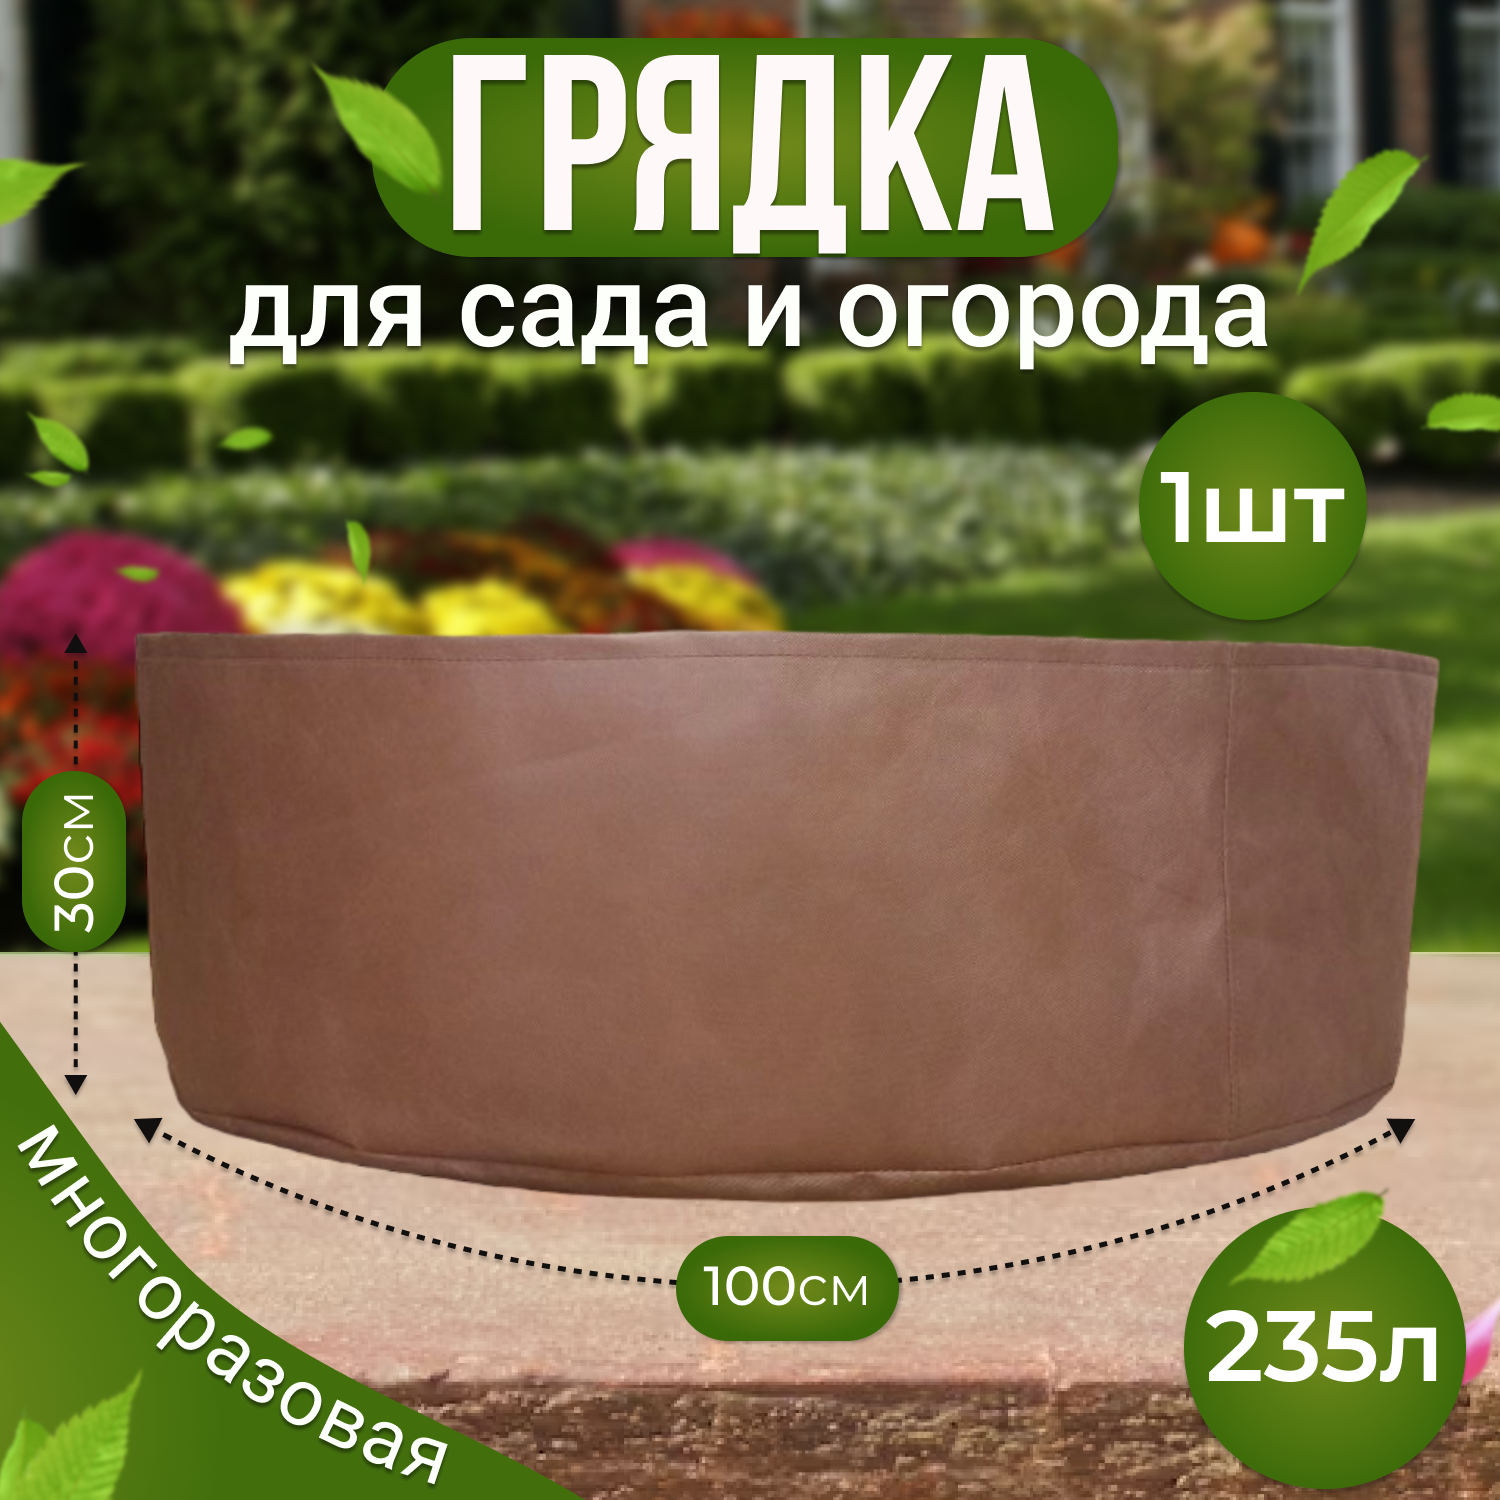 Грядка Grower Green 235_litrov-Brown 235_litrov-Brown_1